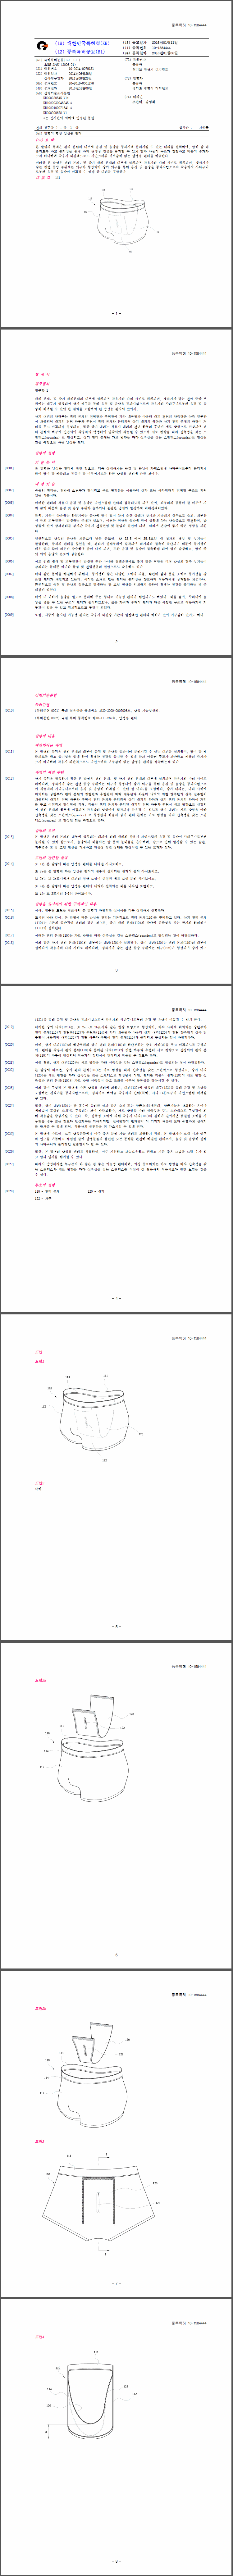 특허 제10-1584444호(남성용 팬티, 류규하)